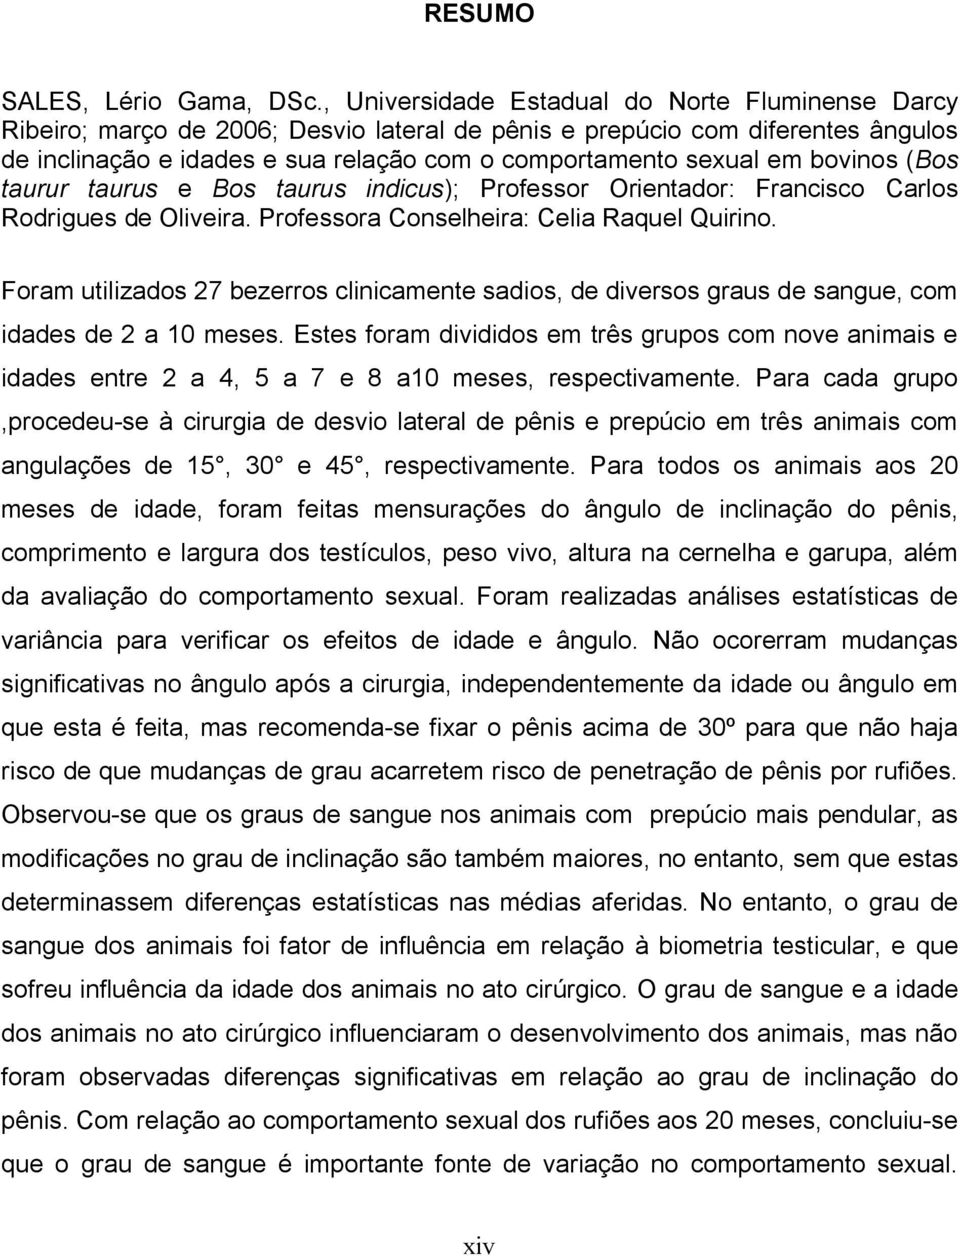 bovinos (Bos taurur taurus e Bos taurus indicus); Professor Orientador: Francisco Carlos Rodrigues de Oliveira. Professora Conselheira: Celia Raquel Quirino.